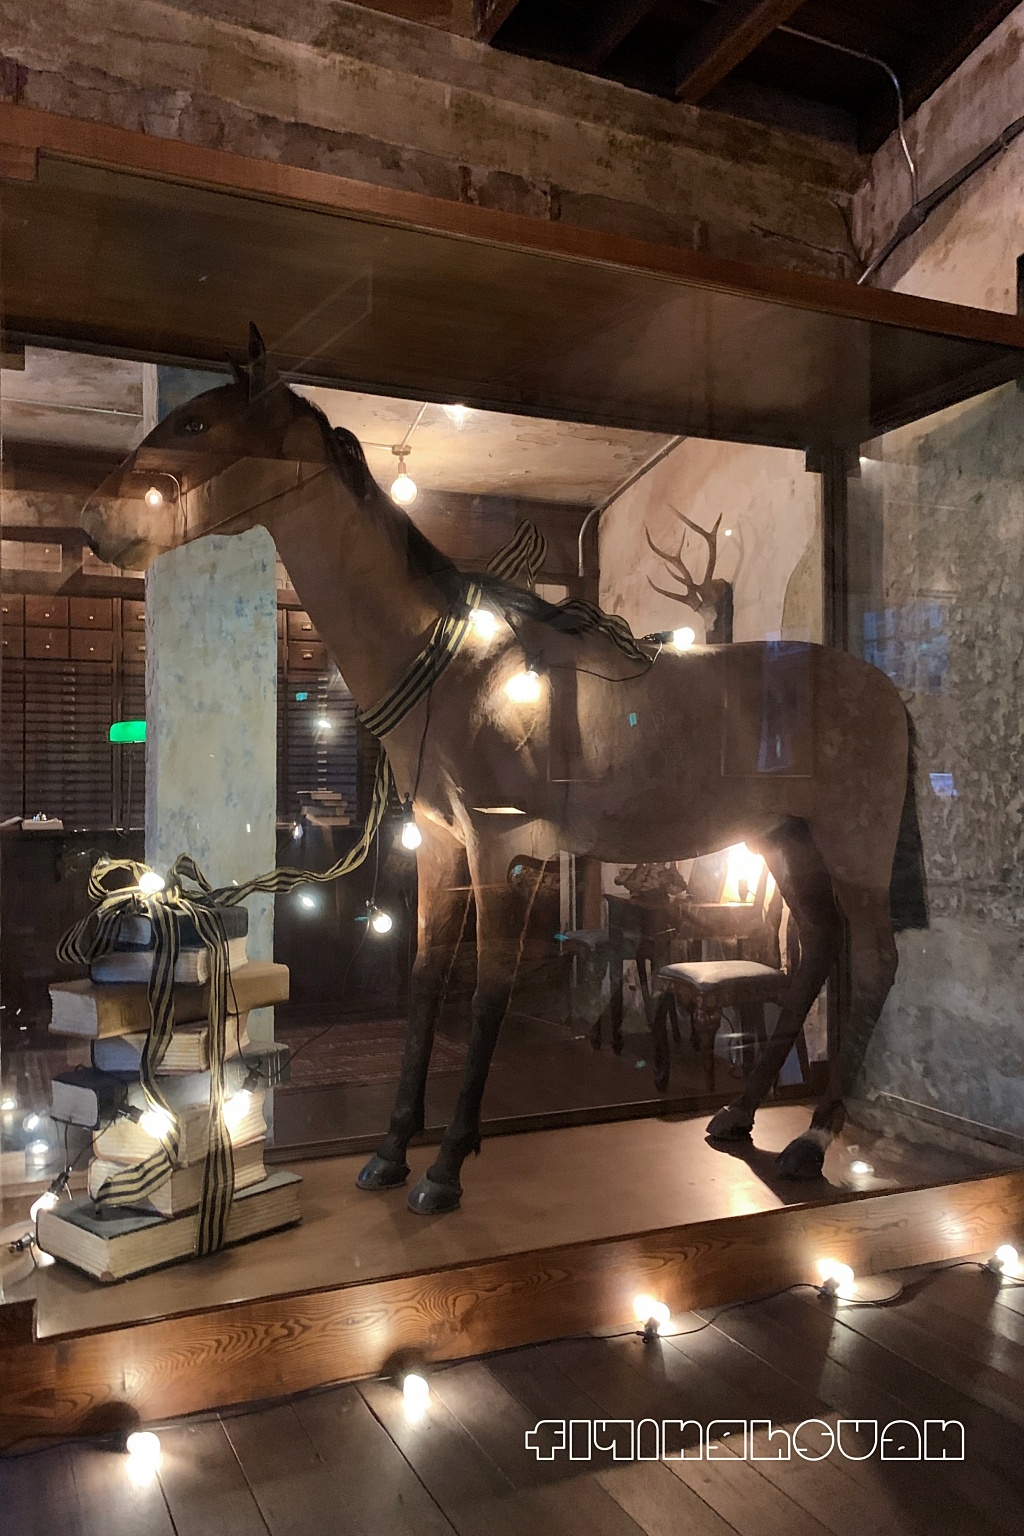 泰國曼谷｜The Mustang Blu｜ 19世紀銀行改建，曼谷老宅建築餐廳、咖啡館、飯店 @飛天璇的口袋